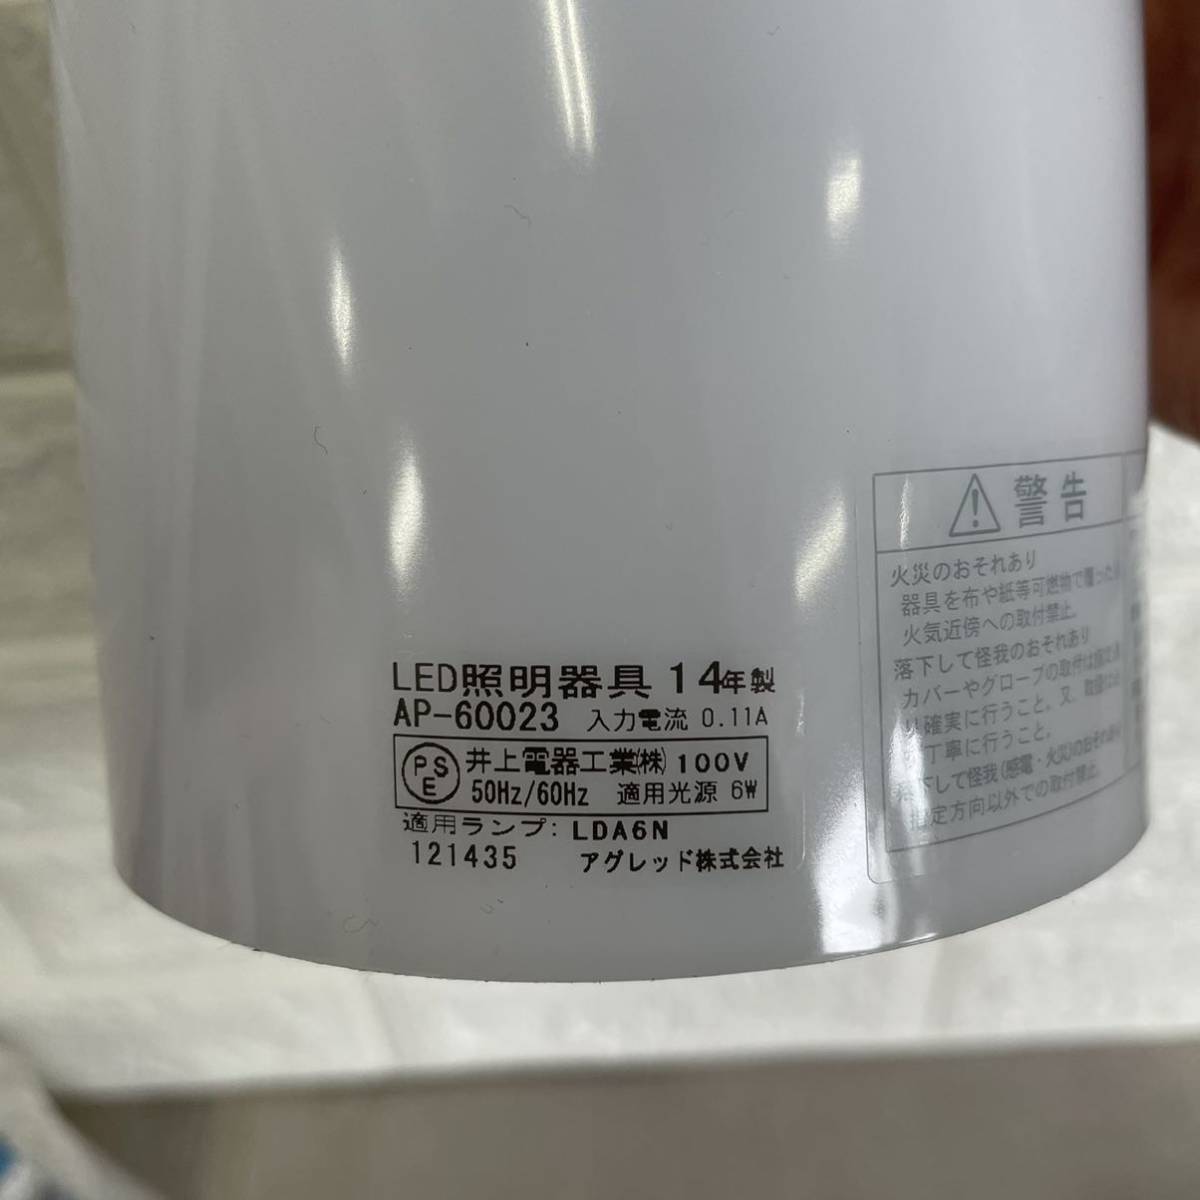 アグレッド株式会社 アグレッド 電気 AP-60023 LED ライト 天井照明 電球 ペンダントライト 乳白色 アクリル プラスチック 格安売り切り  照明